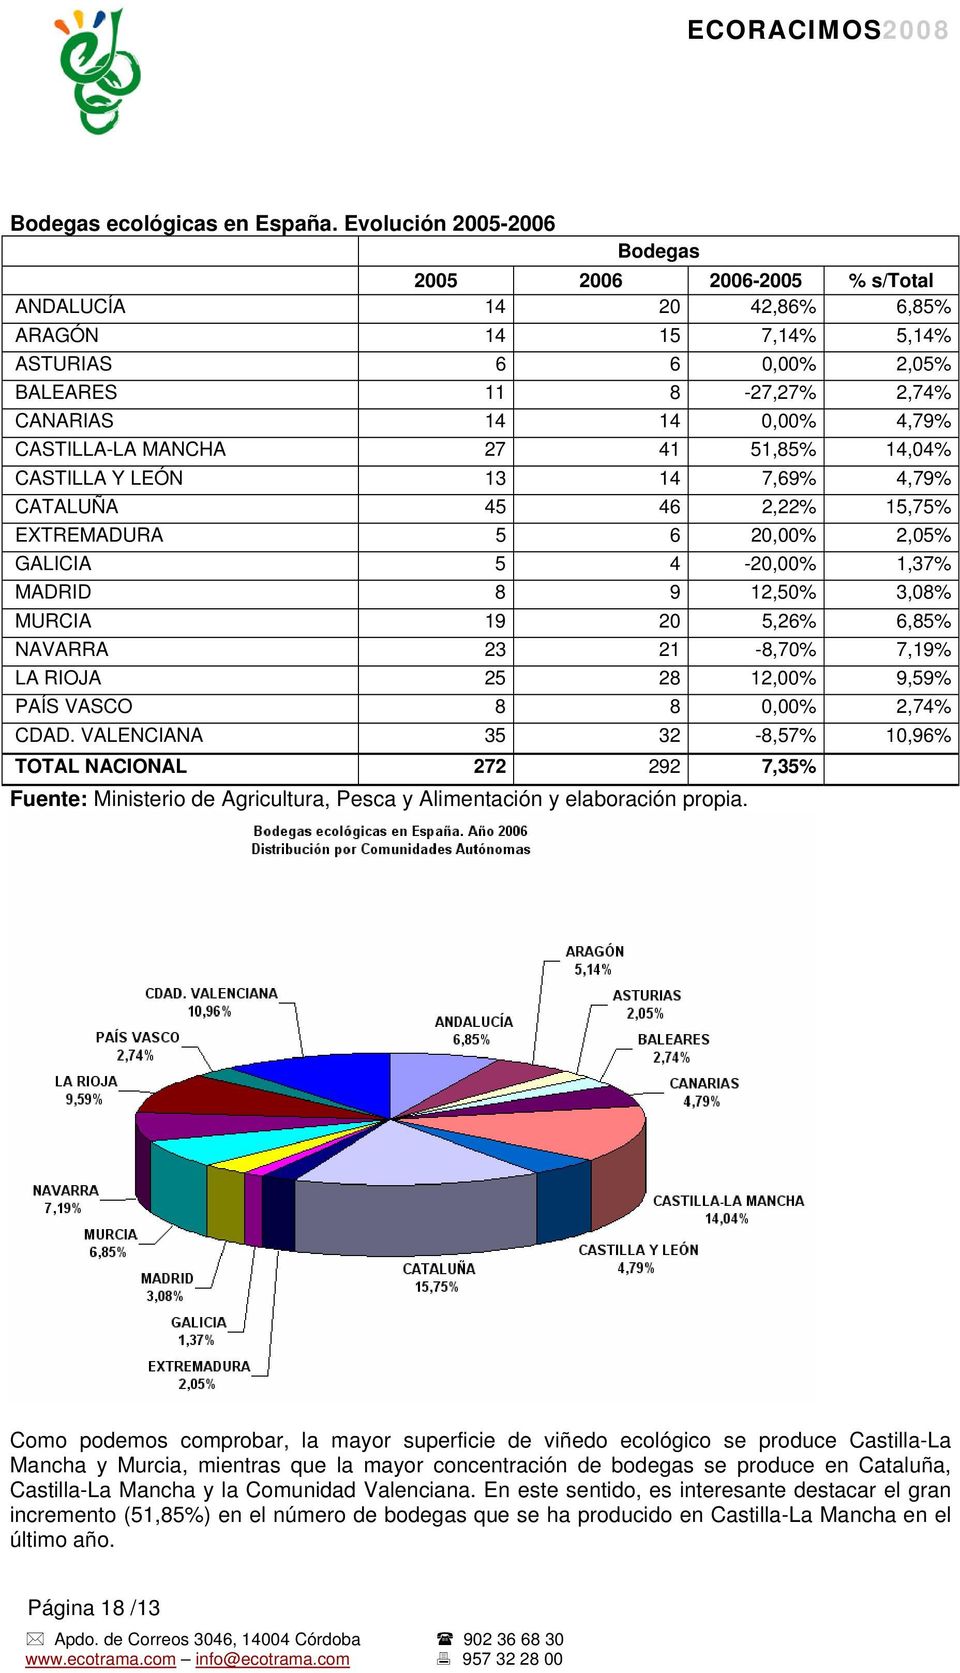 CASTILLA-LA MANCHA 27 41 51,85% 14,04% CASTILLA Y LEÓN 13 14 7,69% 4,79% CATALUÑA 45 46 2,22% 15,75% EXTREMADURA 5 6 20,00% 2,05% GALICIA 5 4-20,00% 1,37% MADRID 8 9 12,50% 3,08% MURCIA 19 20 5,26%